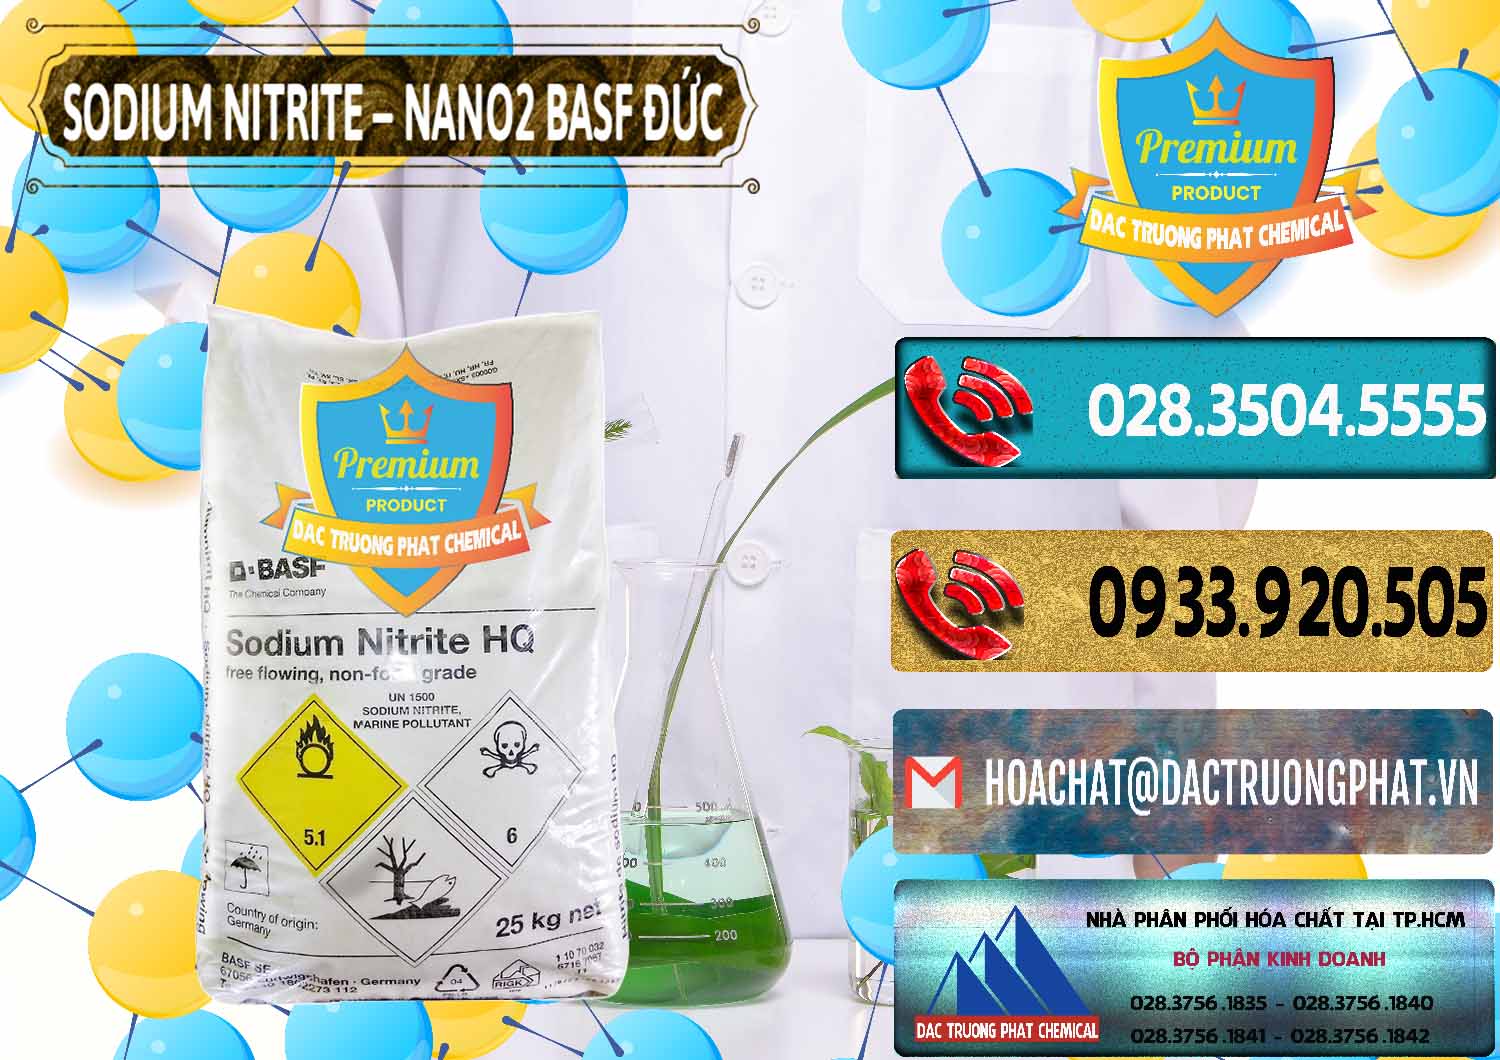 Đơn vị nhập khẩu và bán Sodium Nitrite - NANO2 Đức BASF Germany - 0148 - Công ty chuyên cung cấp ( bán ) hóa chất tại TP.HCM - hoachatdetnhuom.com